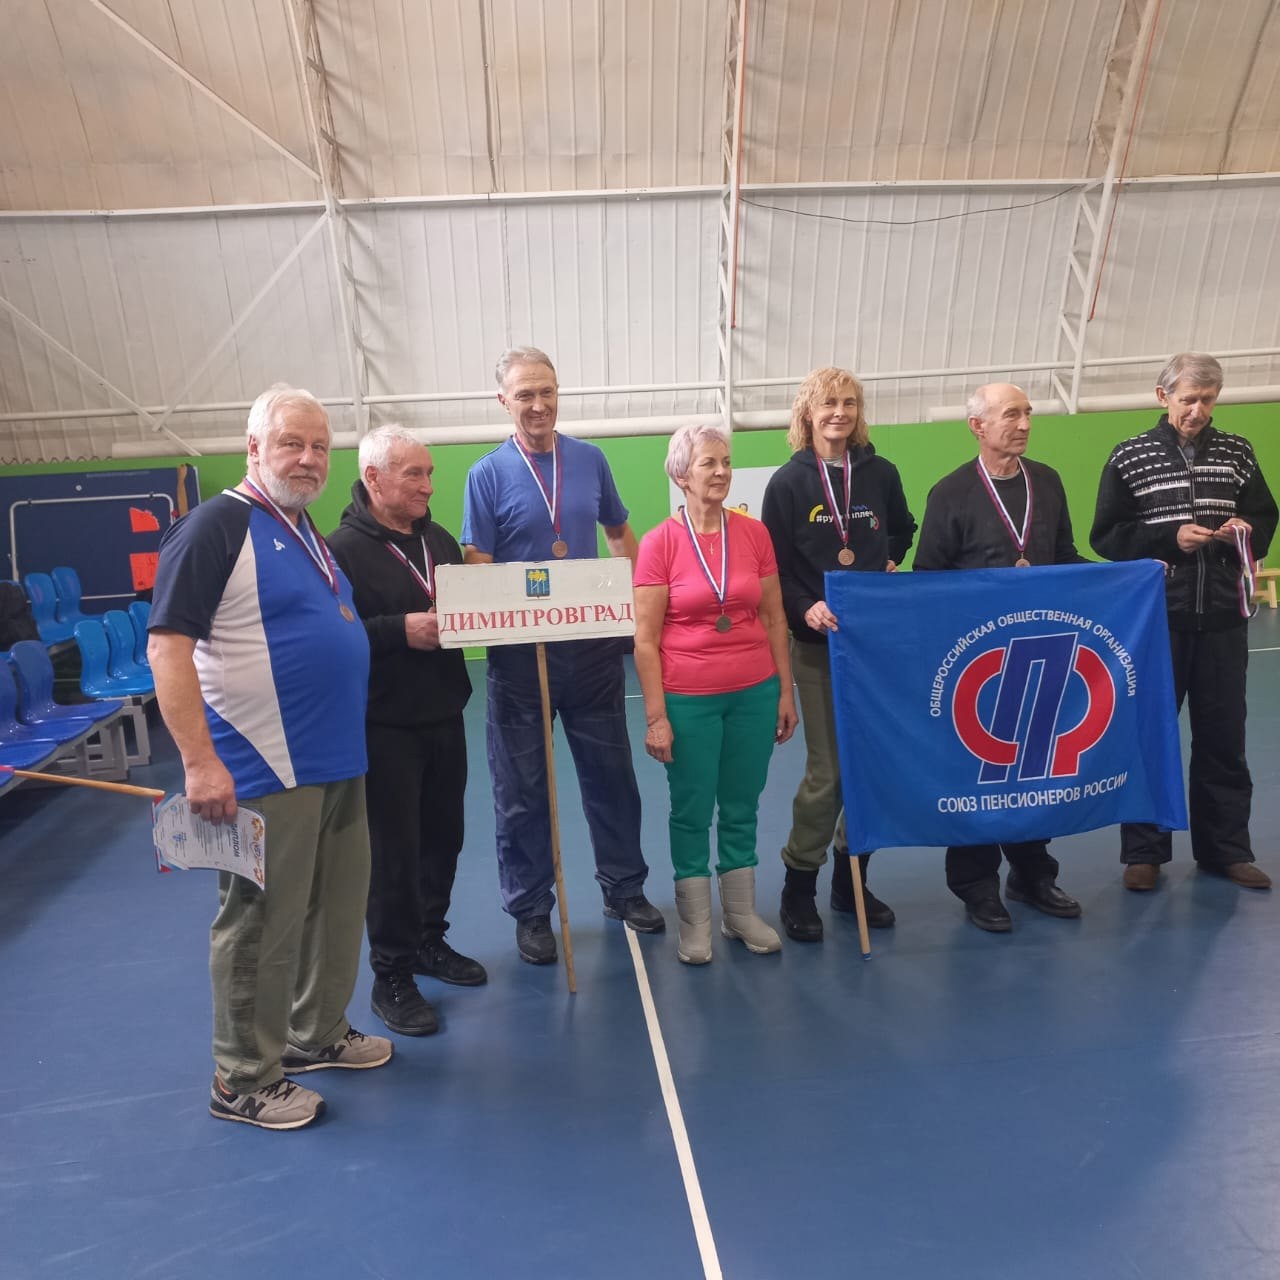 Сборная команда Димитровградского местного отделения Союза пенсионеров России заняла 3 место на VII региональных соревнованиях по волейболу.